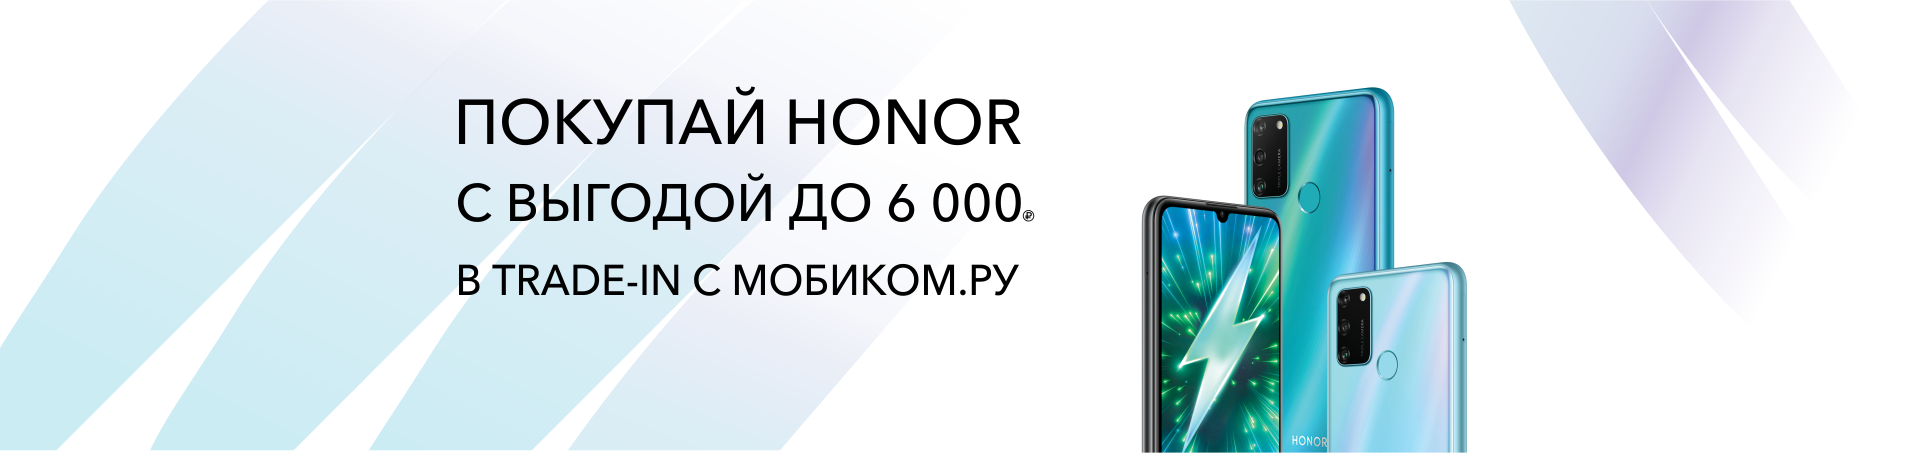 Скидка до 6 000 рублей при покупке Honor в Мобиком.ру